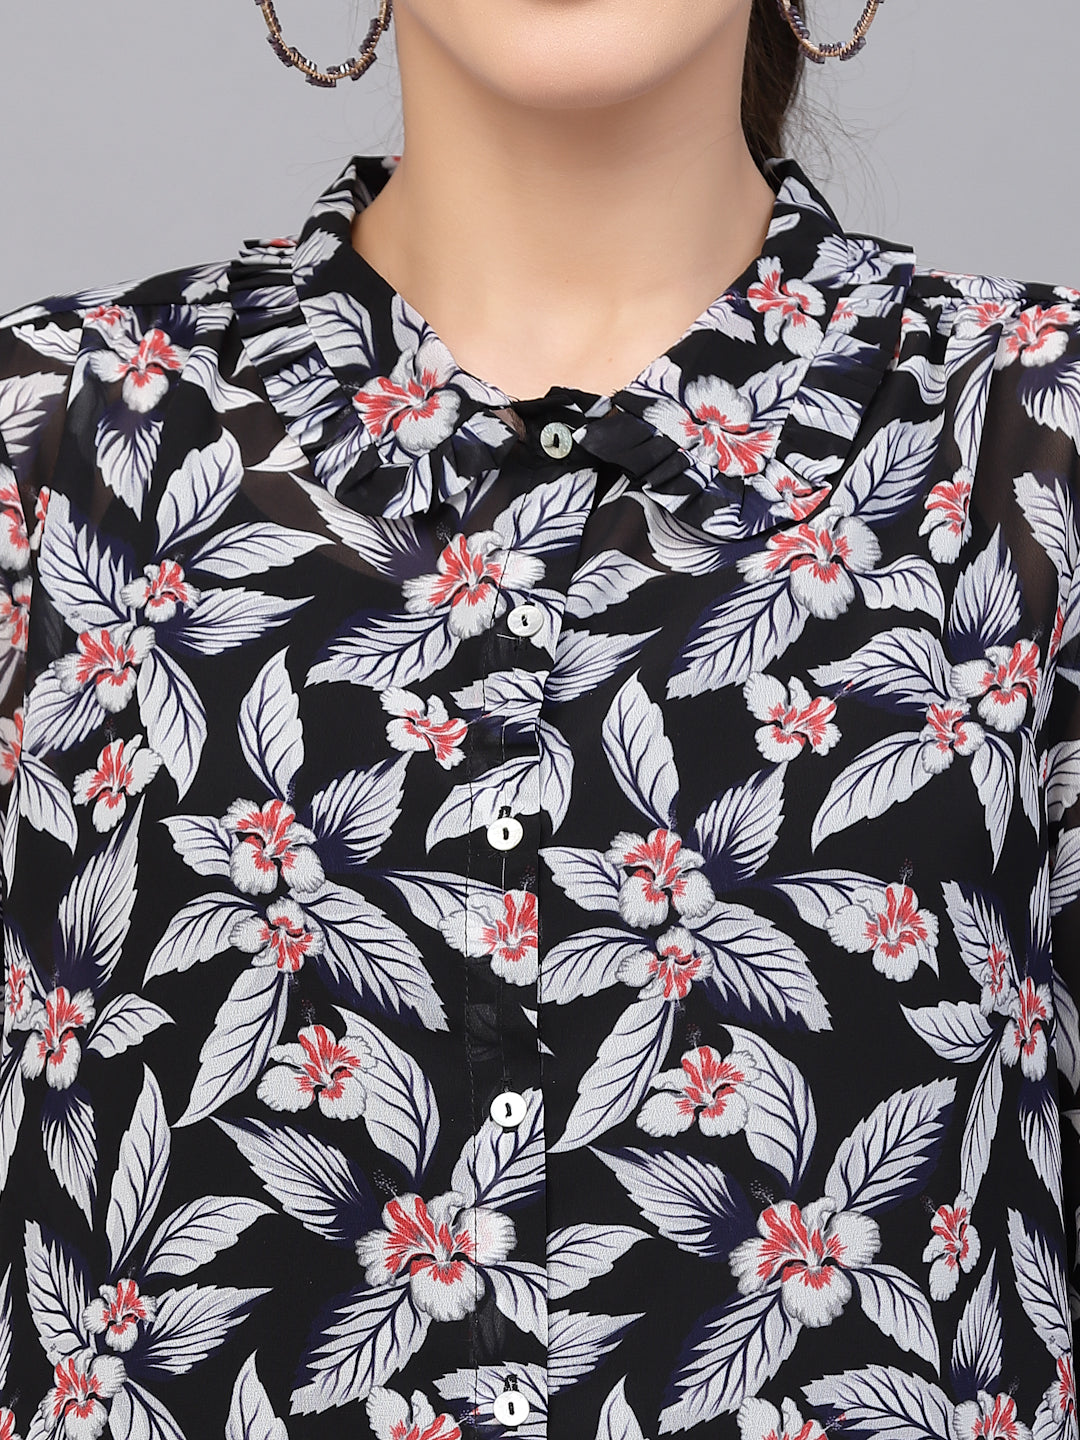 Valbone Women’s Black Georgette Floral Printed Shirt Full Sleeves